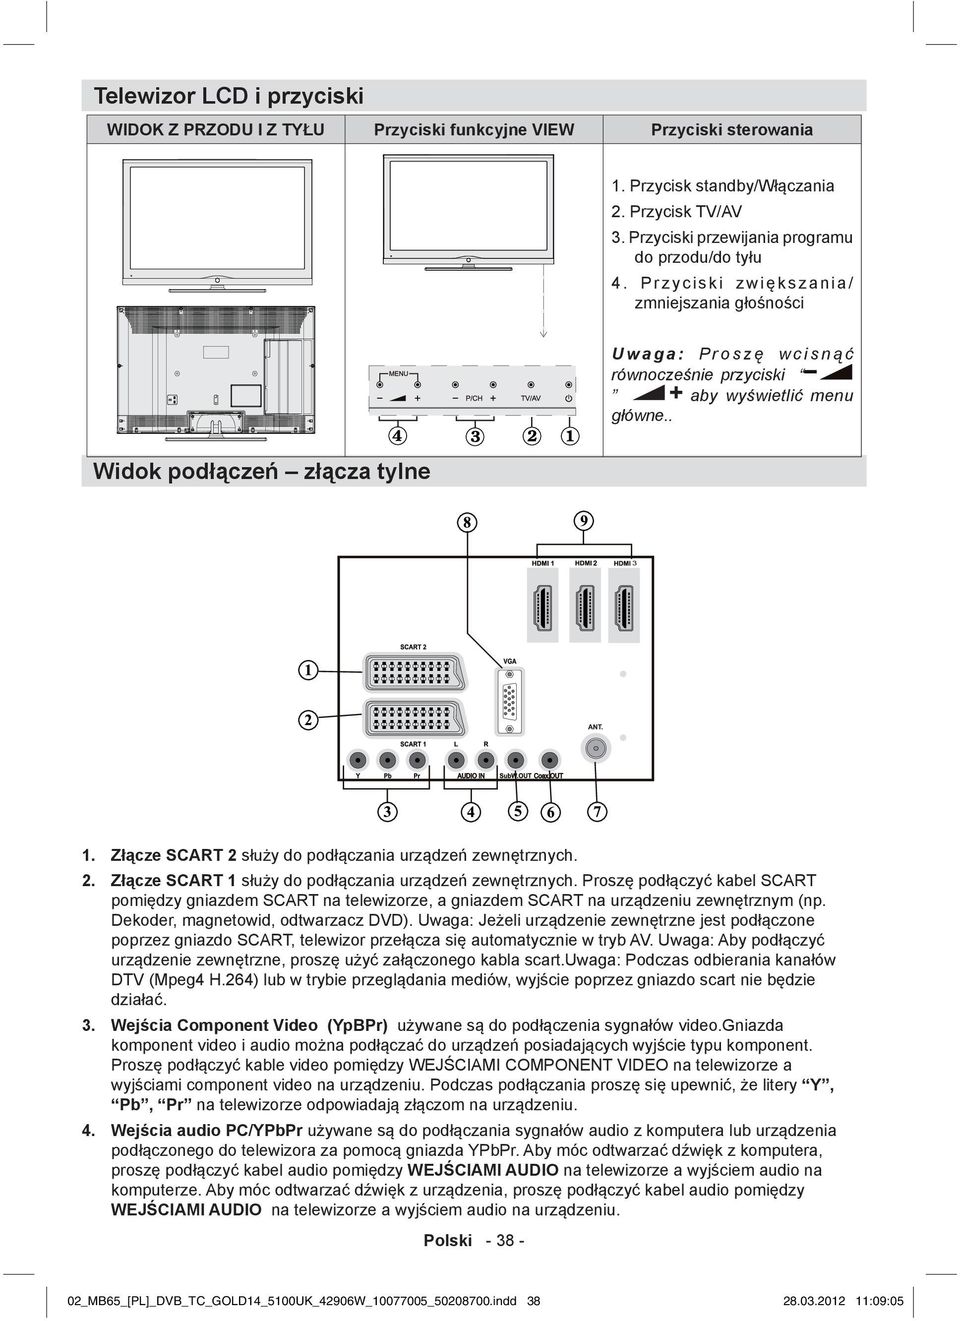 Złącze SCART 2 służy do podłączania urządzeń zewnętrznych. 2. Złącze SCART 1 służy do podłączania urządzeń zewnętrznych.